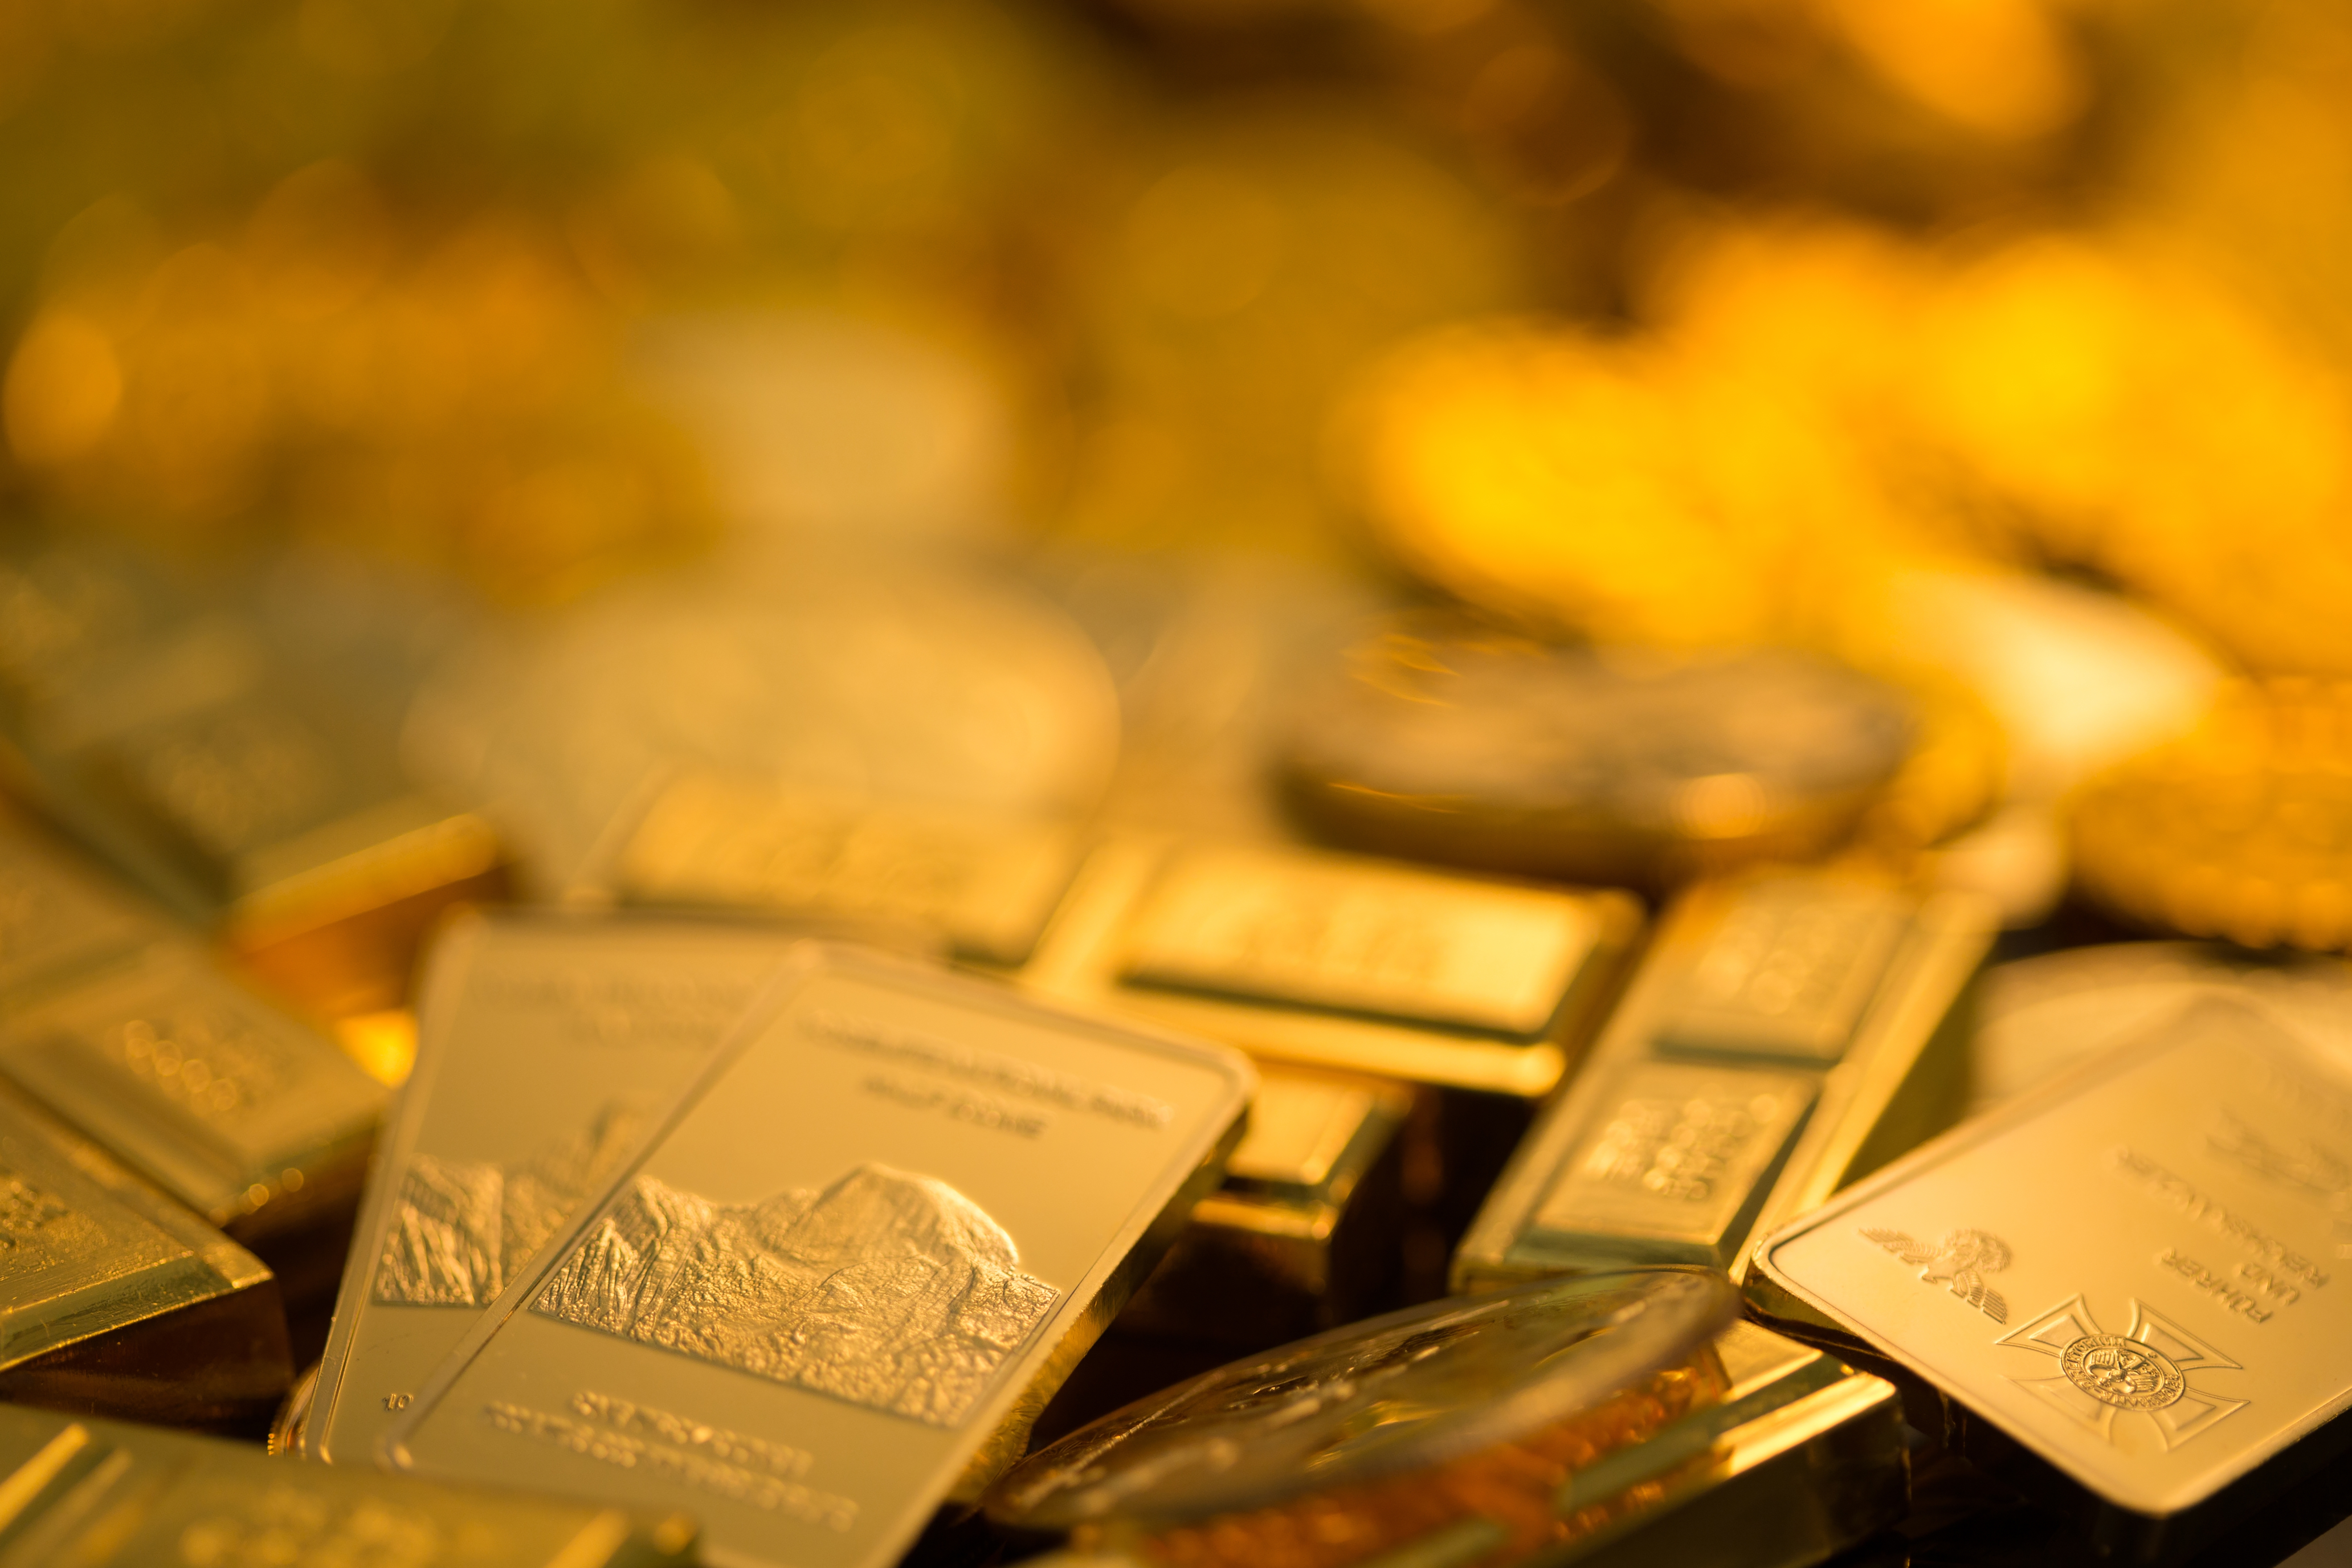 紐約商品交易所黃金期貨市場8月黃金期價20日下跌